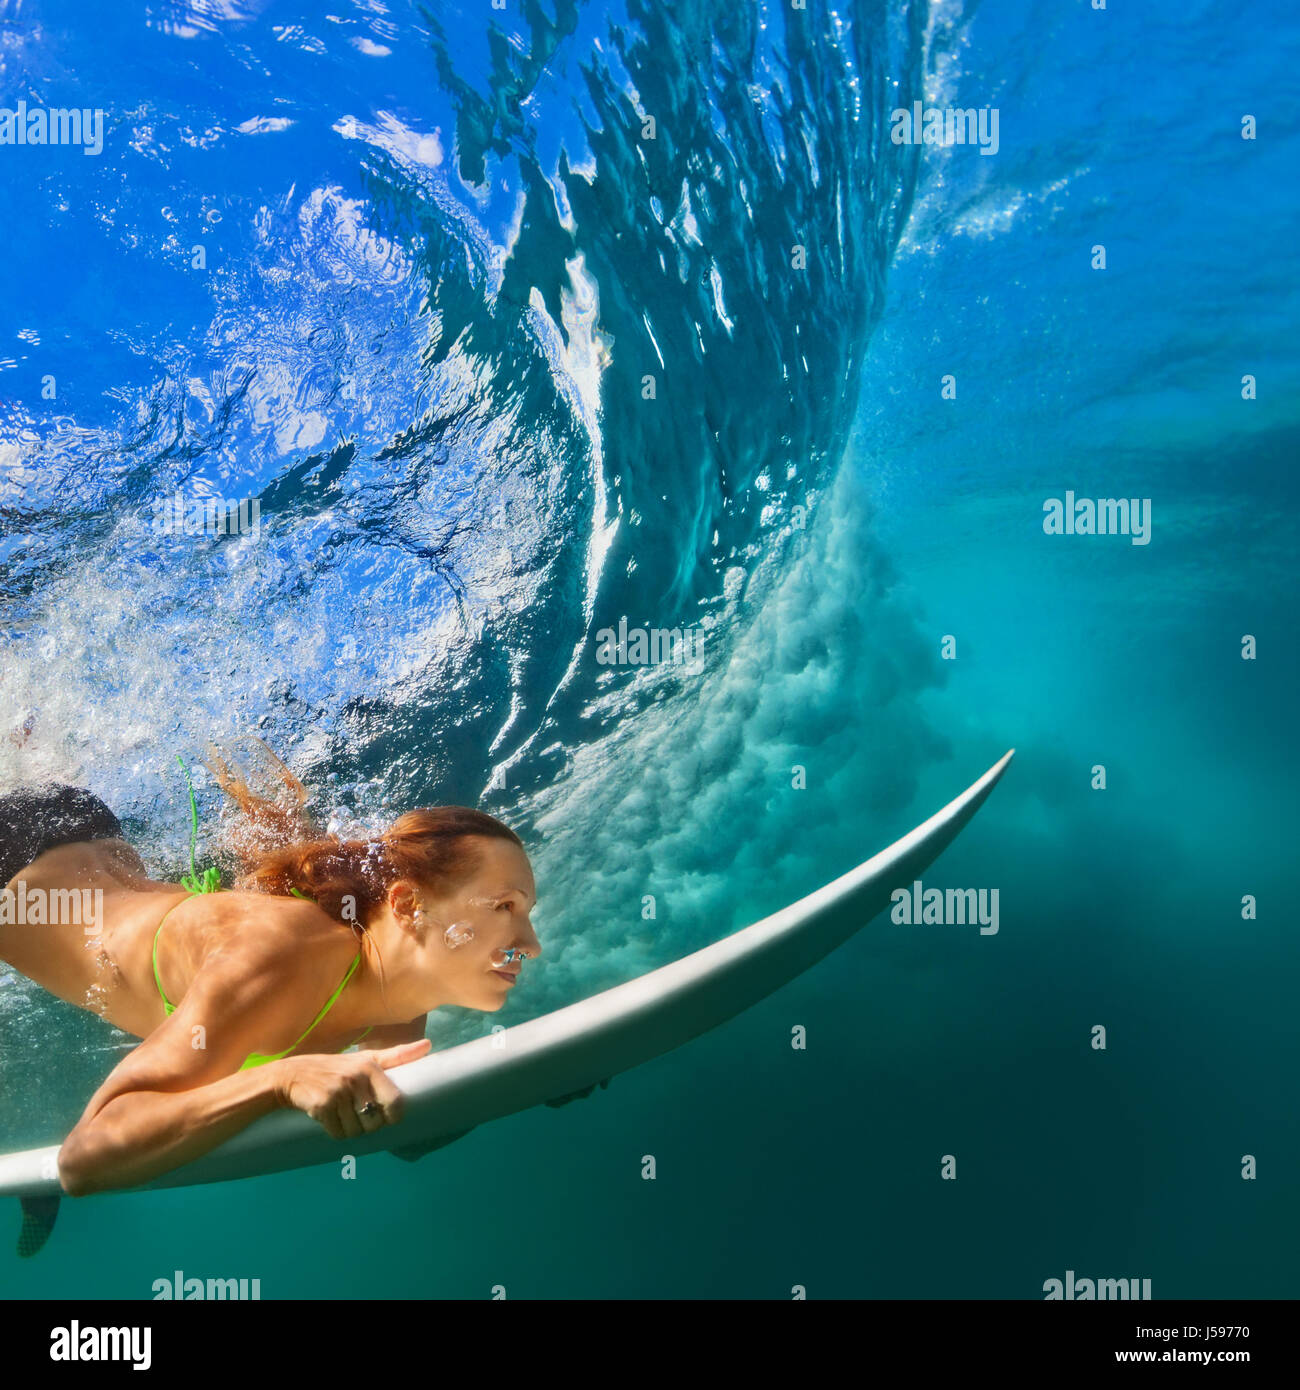 Aktive Mädchen im Bikini in Aktion. Surfer-Frau mit Surf Board Tauchgang  unter Wasser unter brechen große Welle. Gesunde Lebensweise. Wassersport,  Extreme Surfen Stockfotografie - Alamy